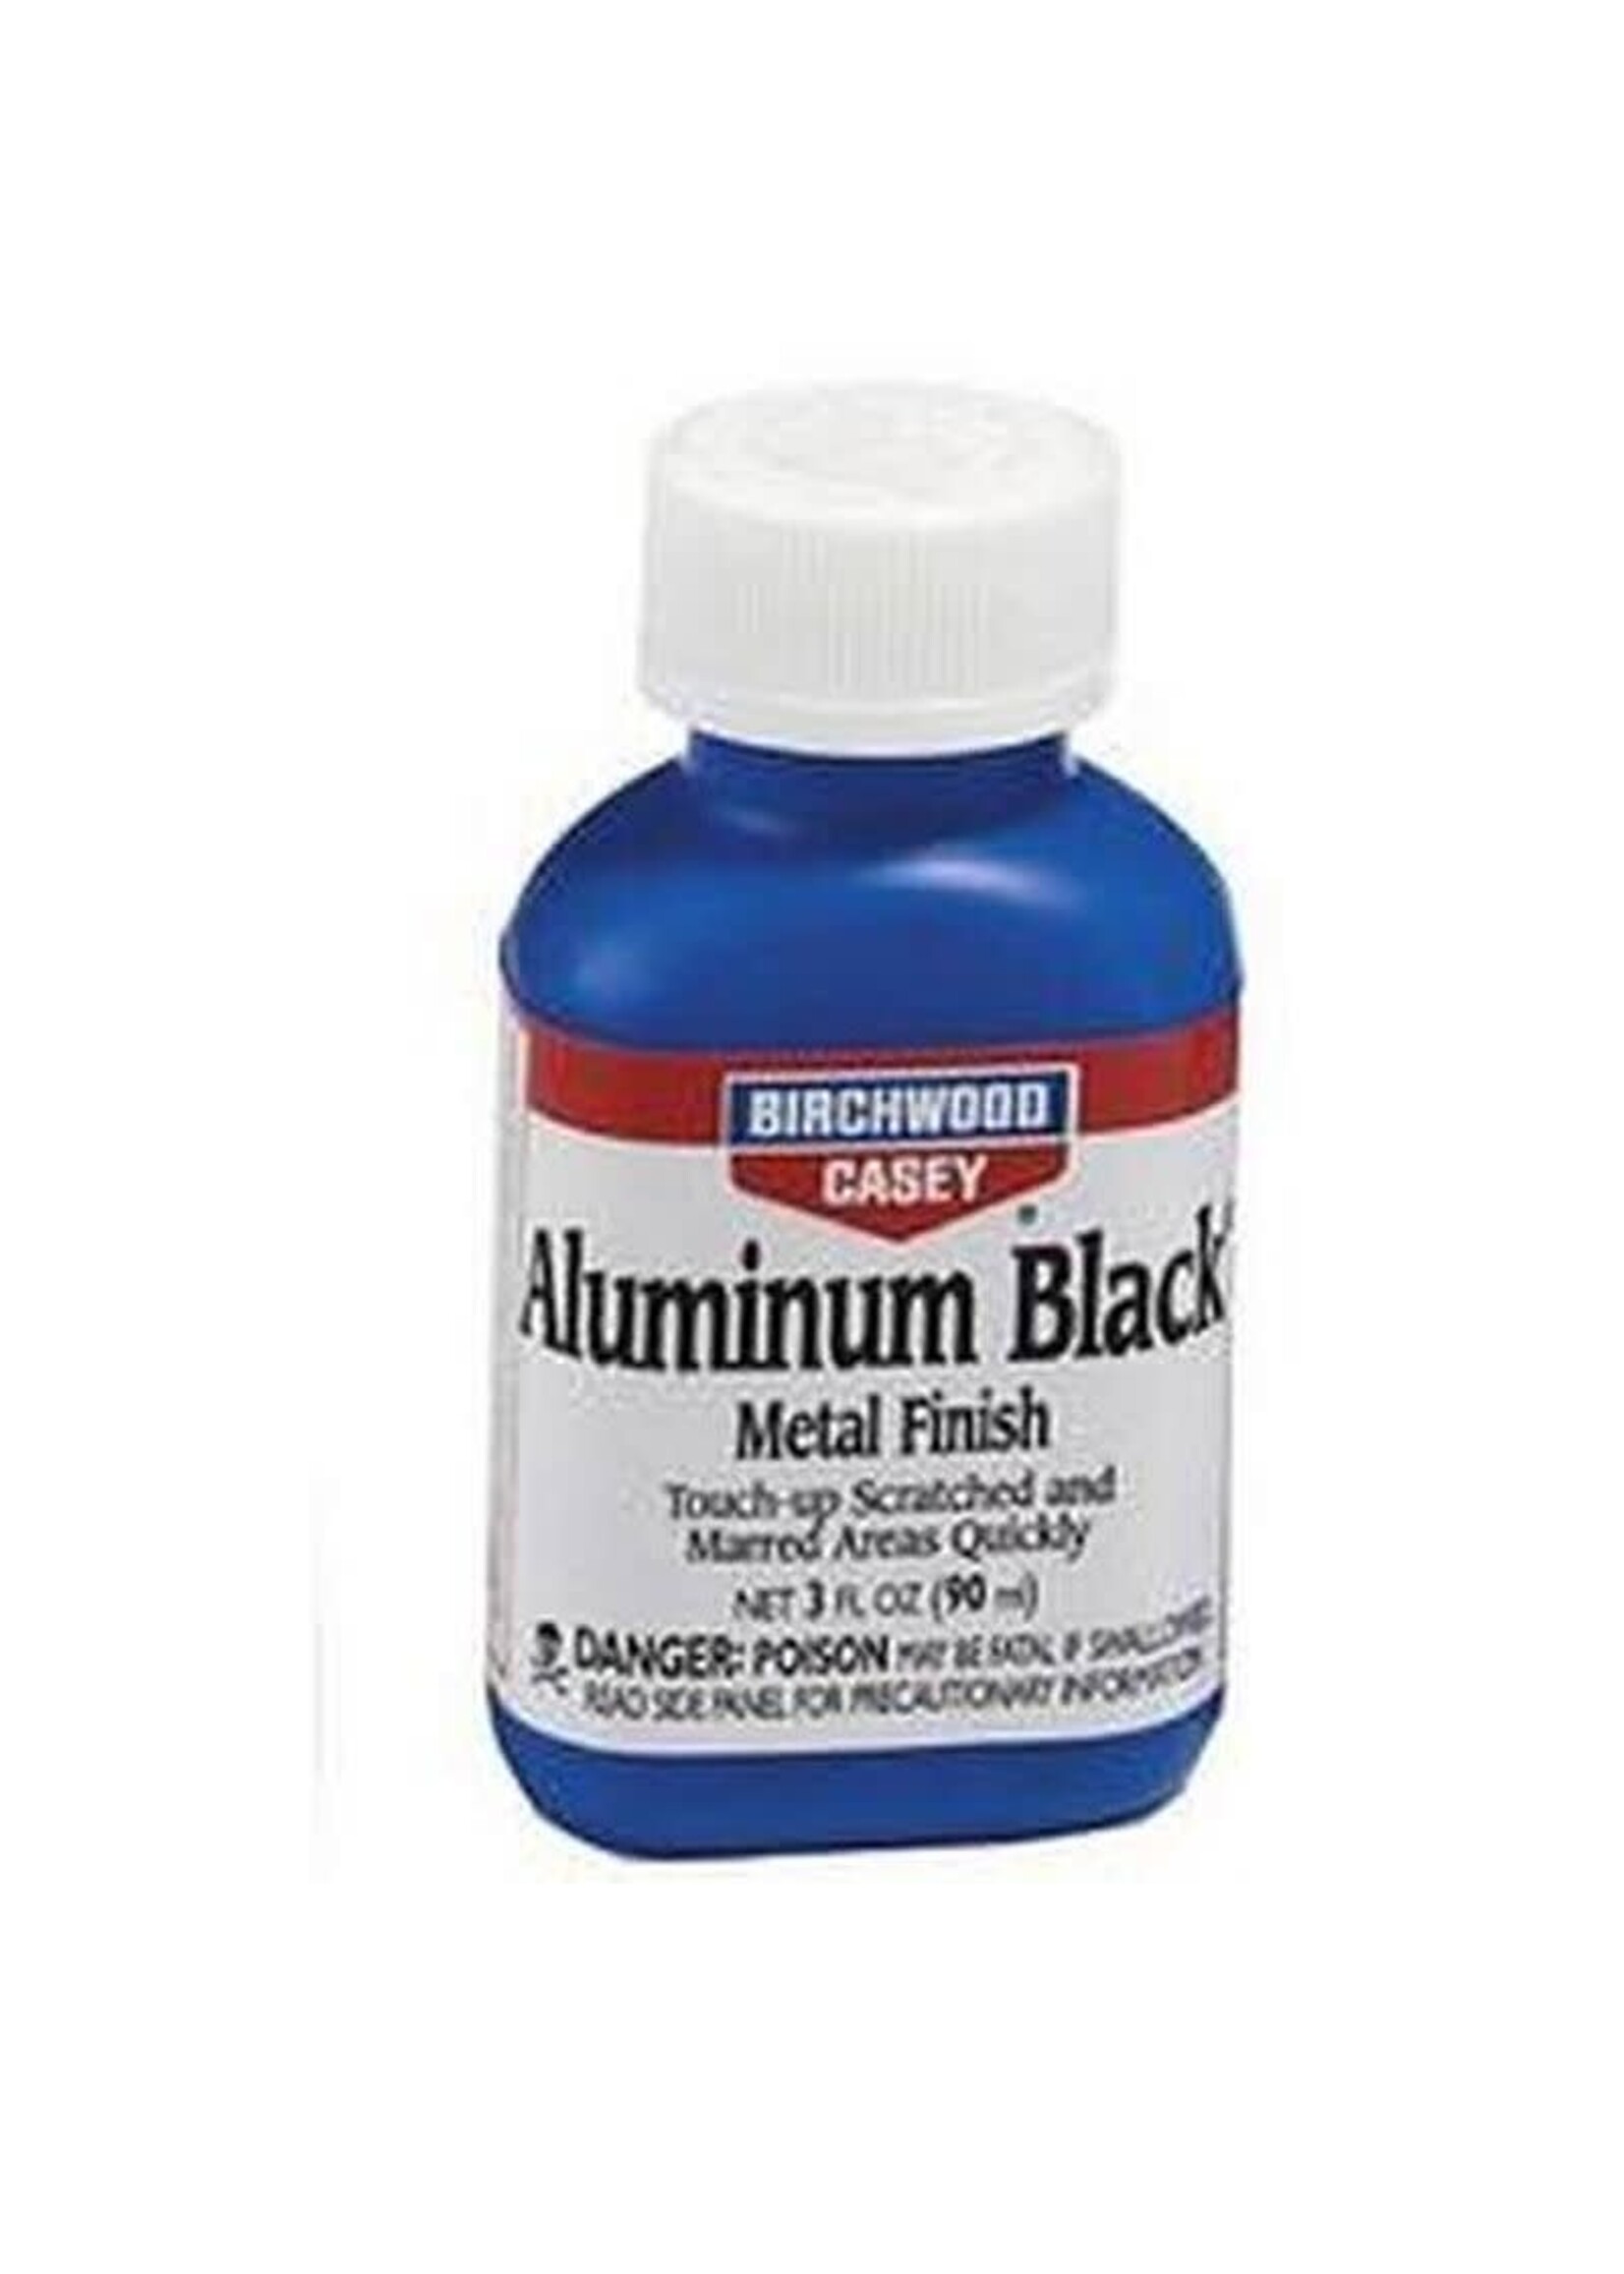 BIRCHWOOD CASEY ALUMINUM BLACK METAL FINISH 3FL OZ